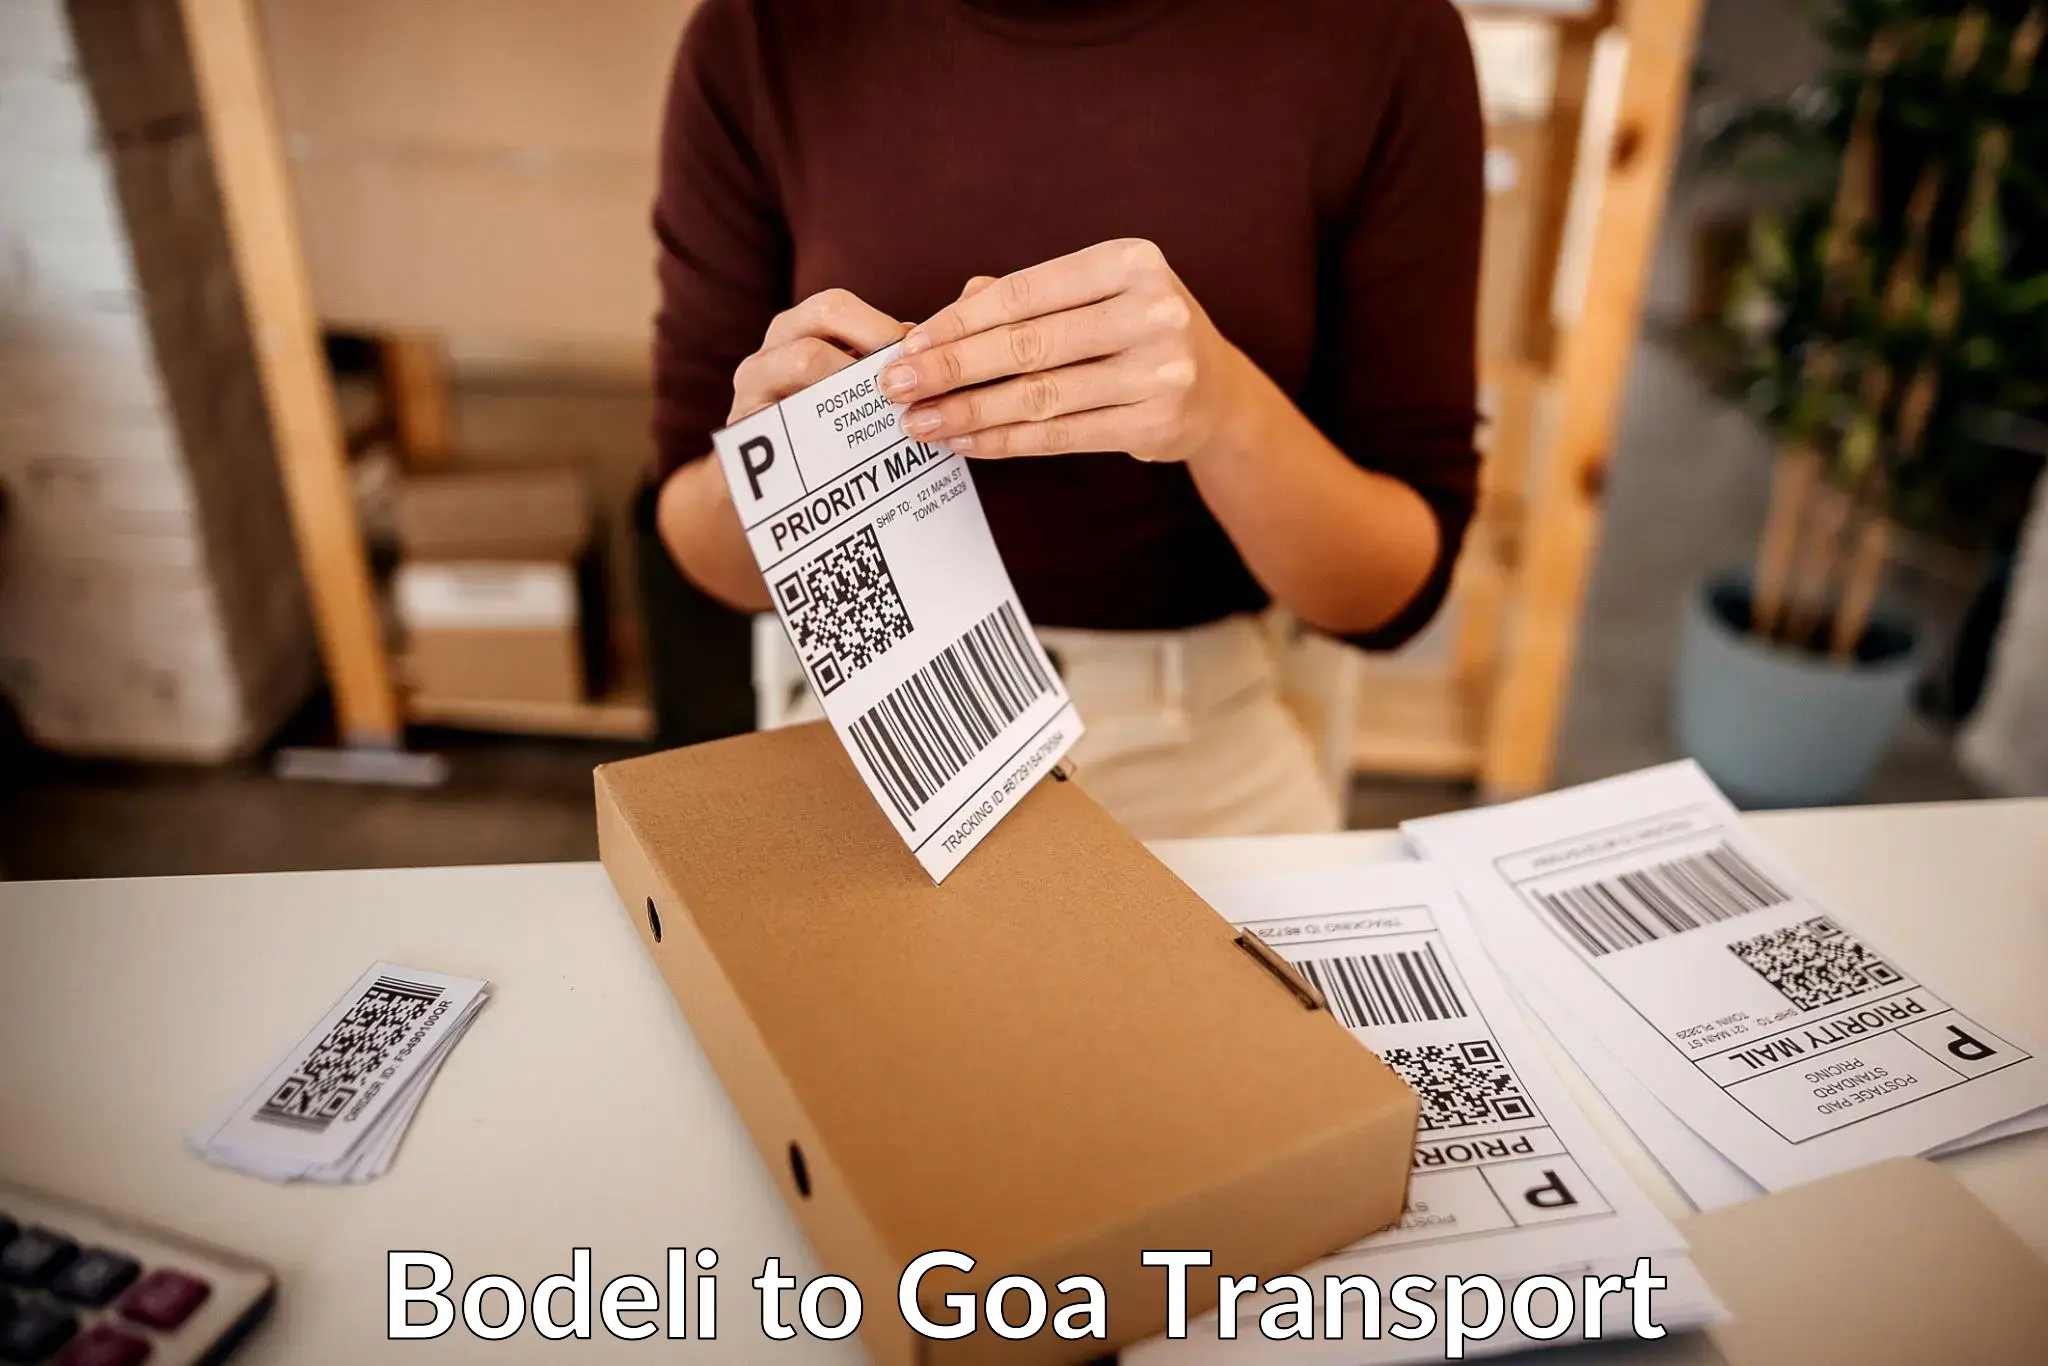 Shipping partner Bodeli to Goa